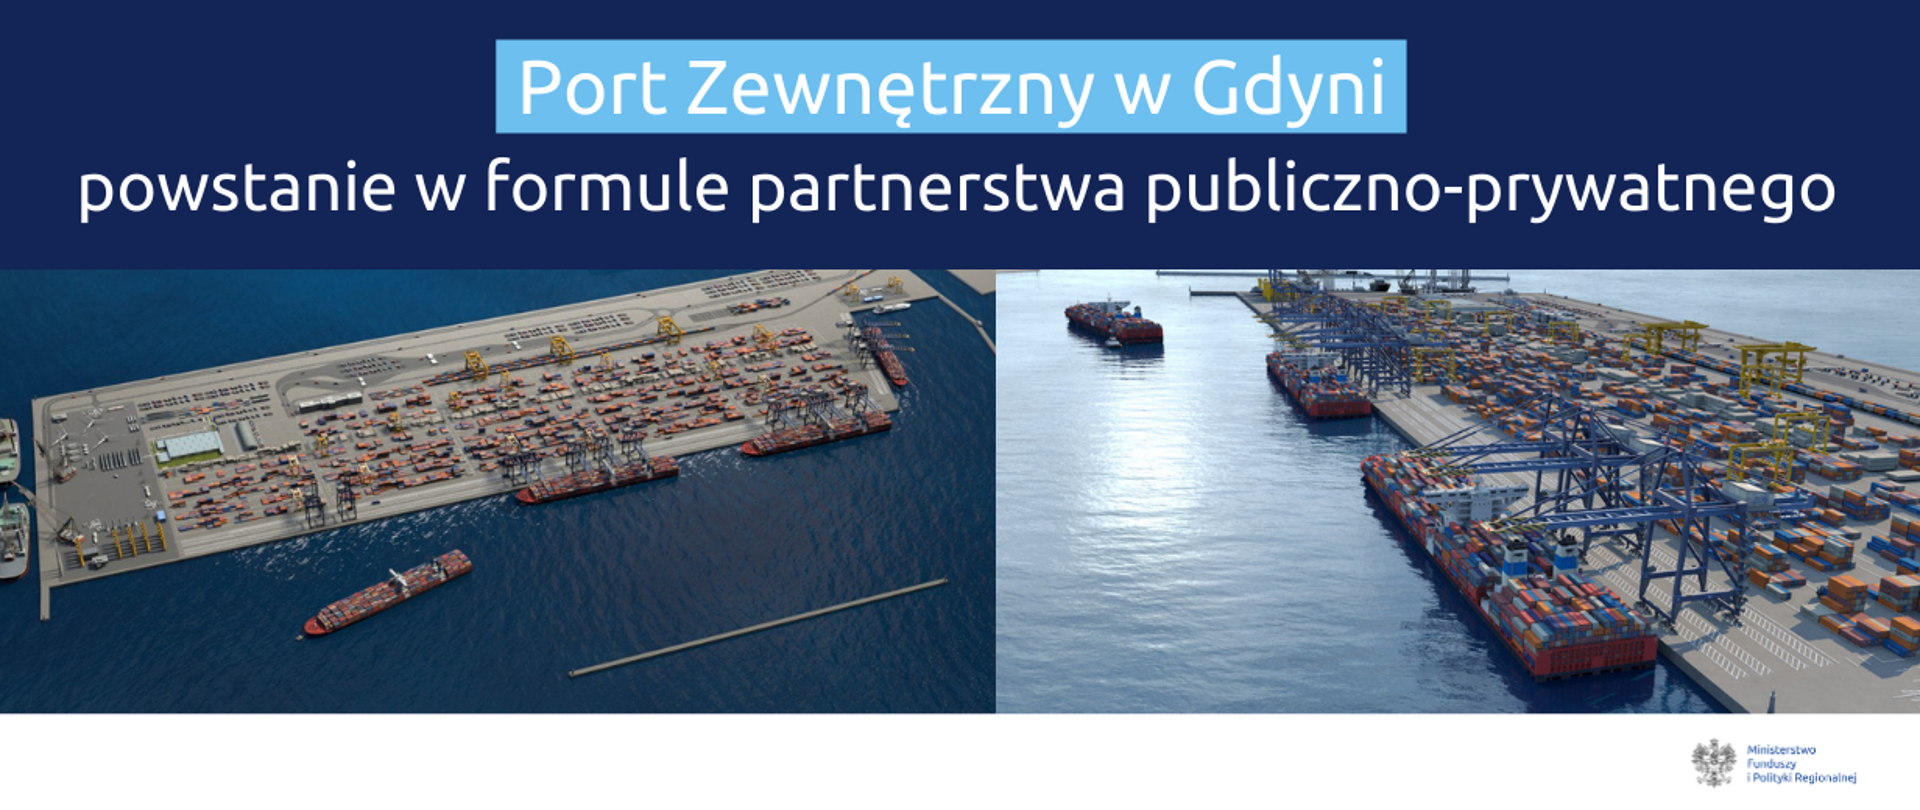 Na grafice u góry napis: "Port Zewnętrzny w Gdyni powstanie w formule partnerstwa publiczno-prywatnego". Poniżej zdjęcia portu w Gdyni.